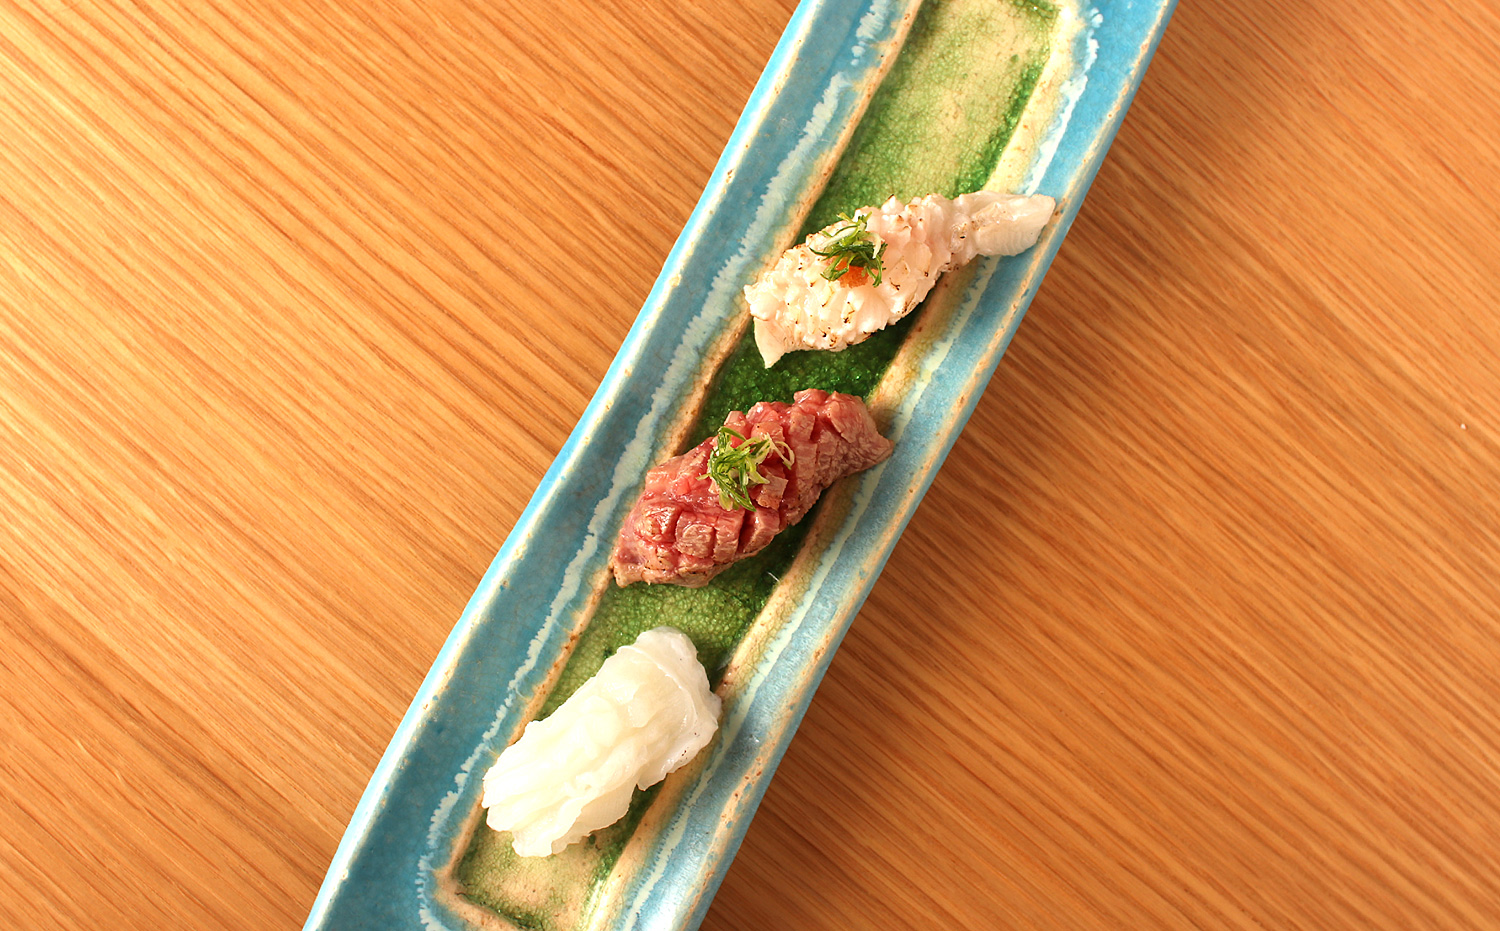 城崎温泉 鮨処 をり鶴 城崎で創業80年 最高の技と味が楽しめる寿司屋です